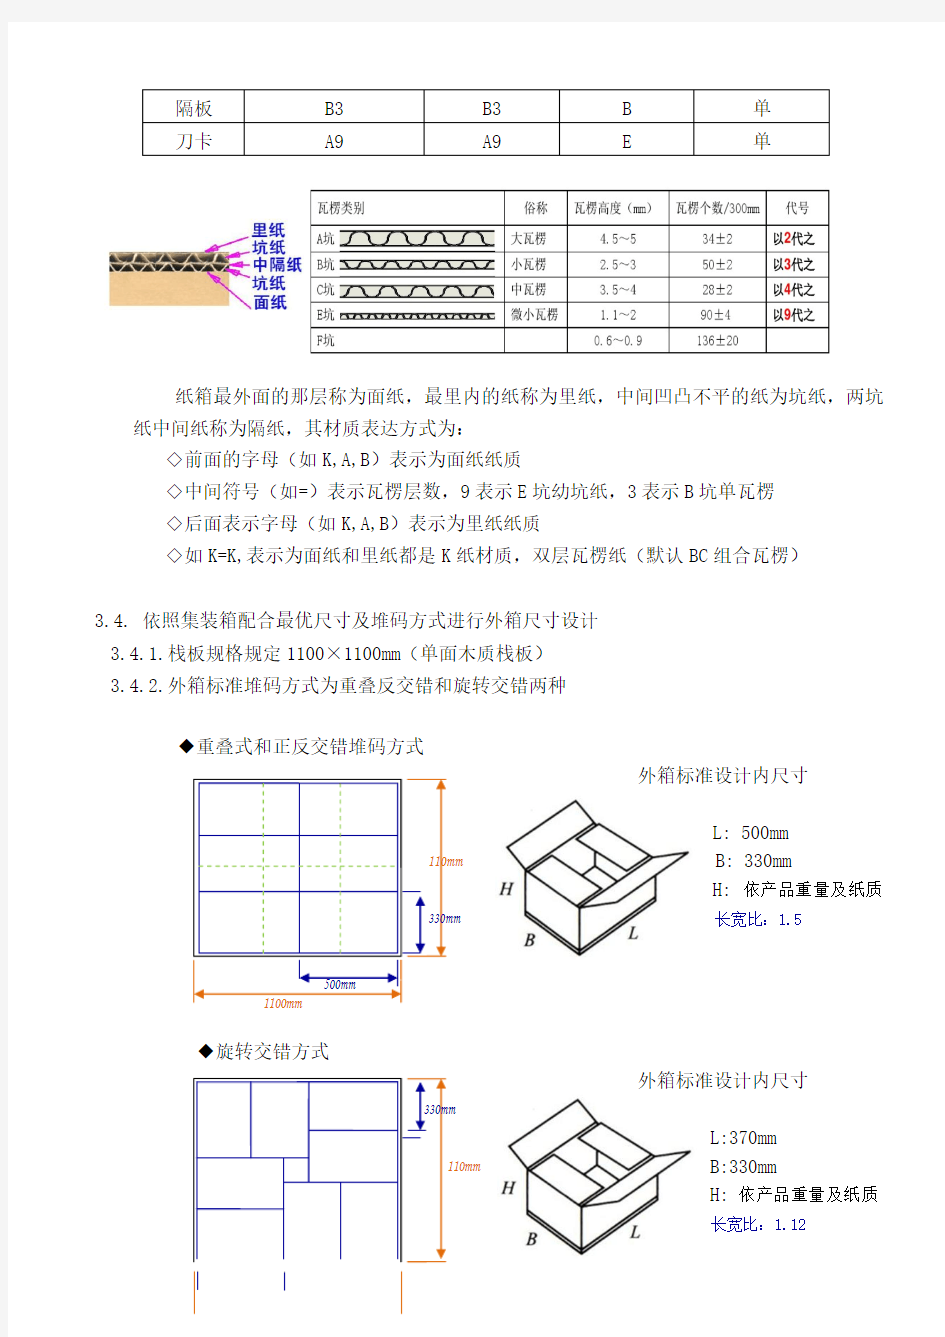 产品包装纸箱设计规范